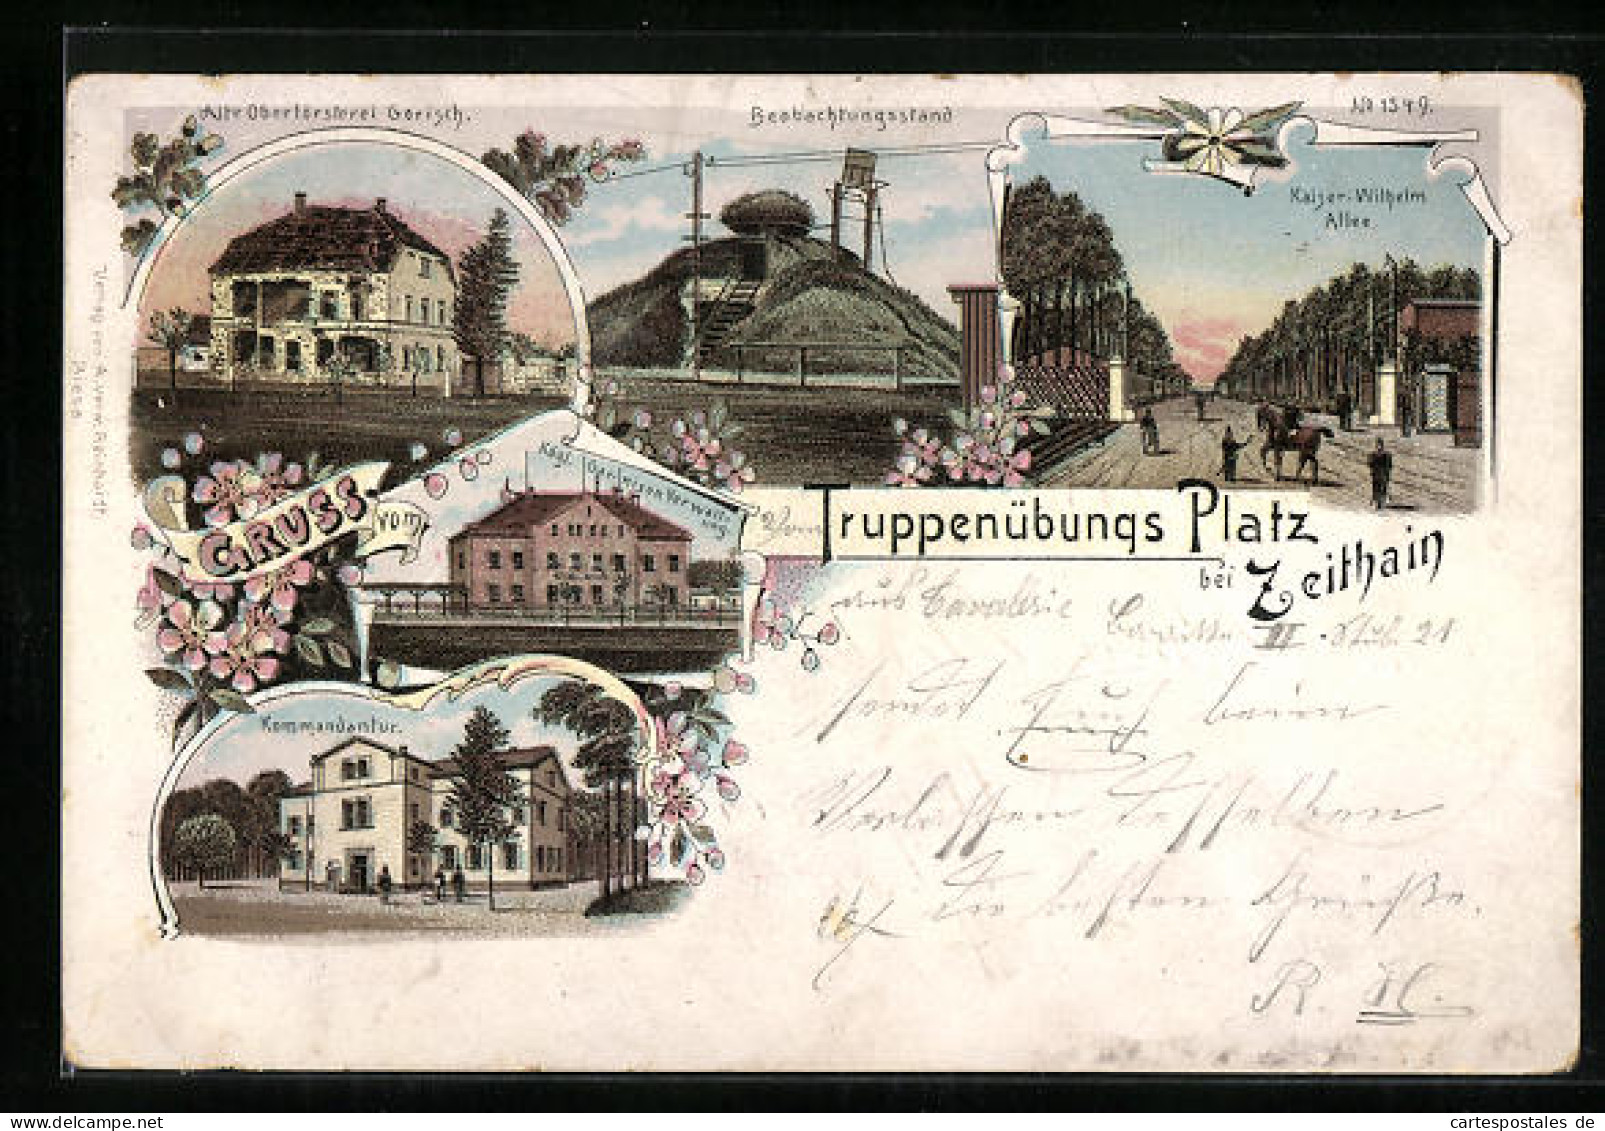 Lithographie Zeithain, Truppenübungsplatz, Kommandantur, Alte Oberförsterei Gerisch, Beobachtungsstand  - Zeithain